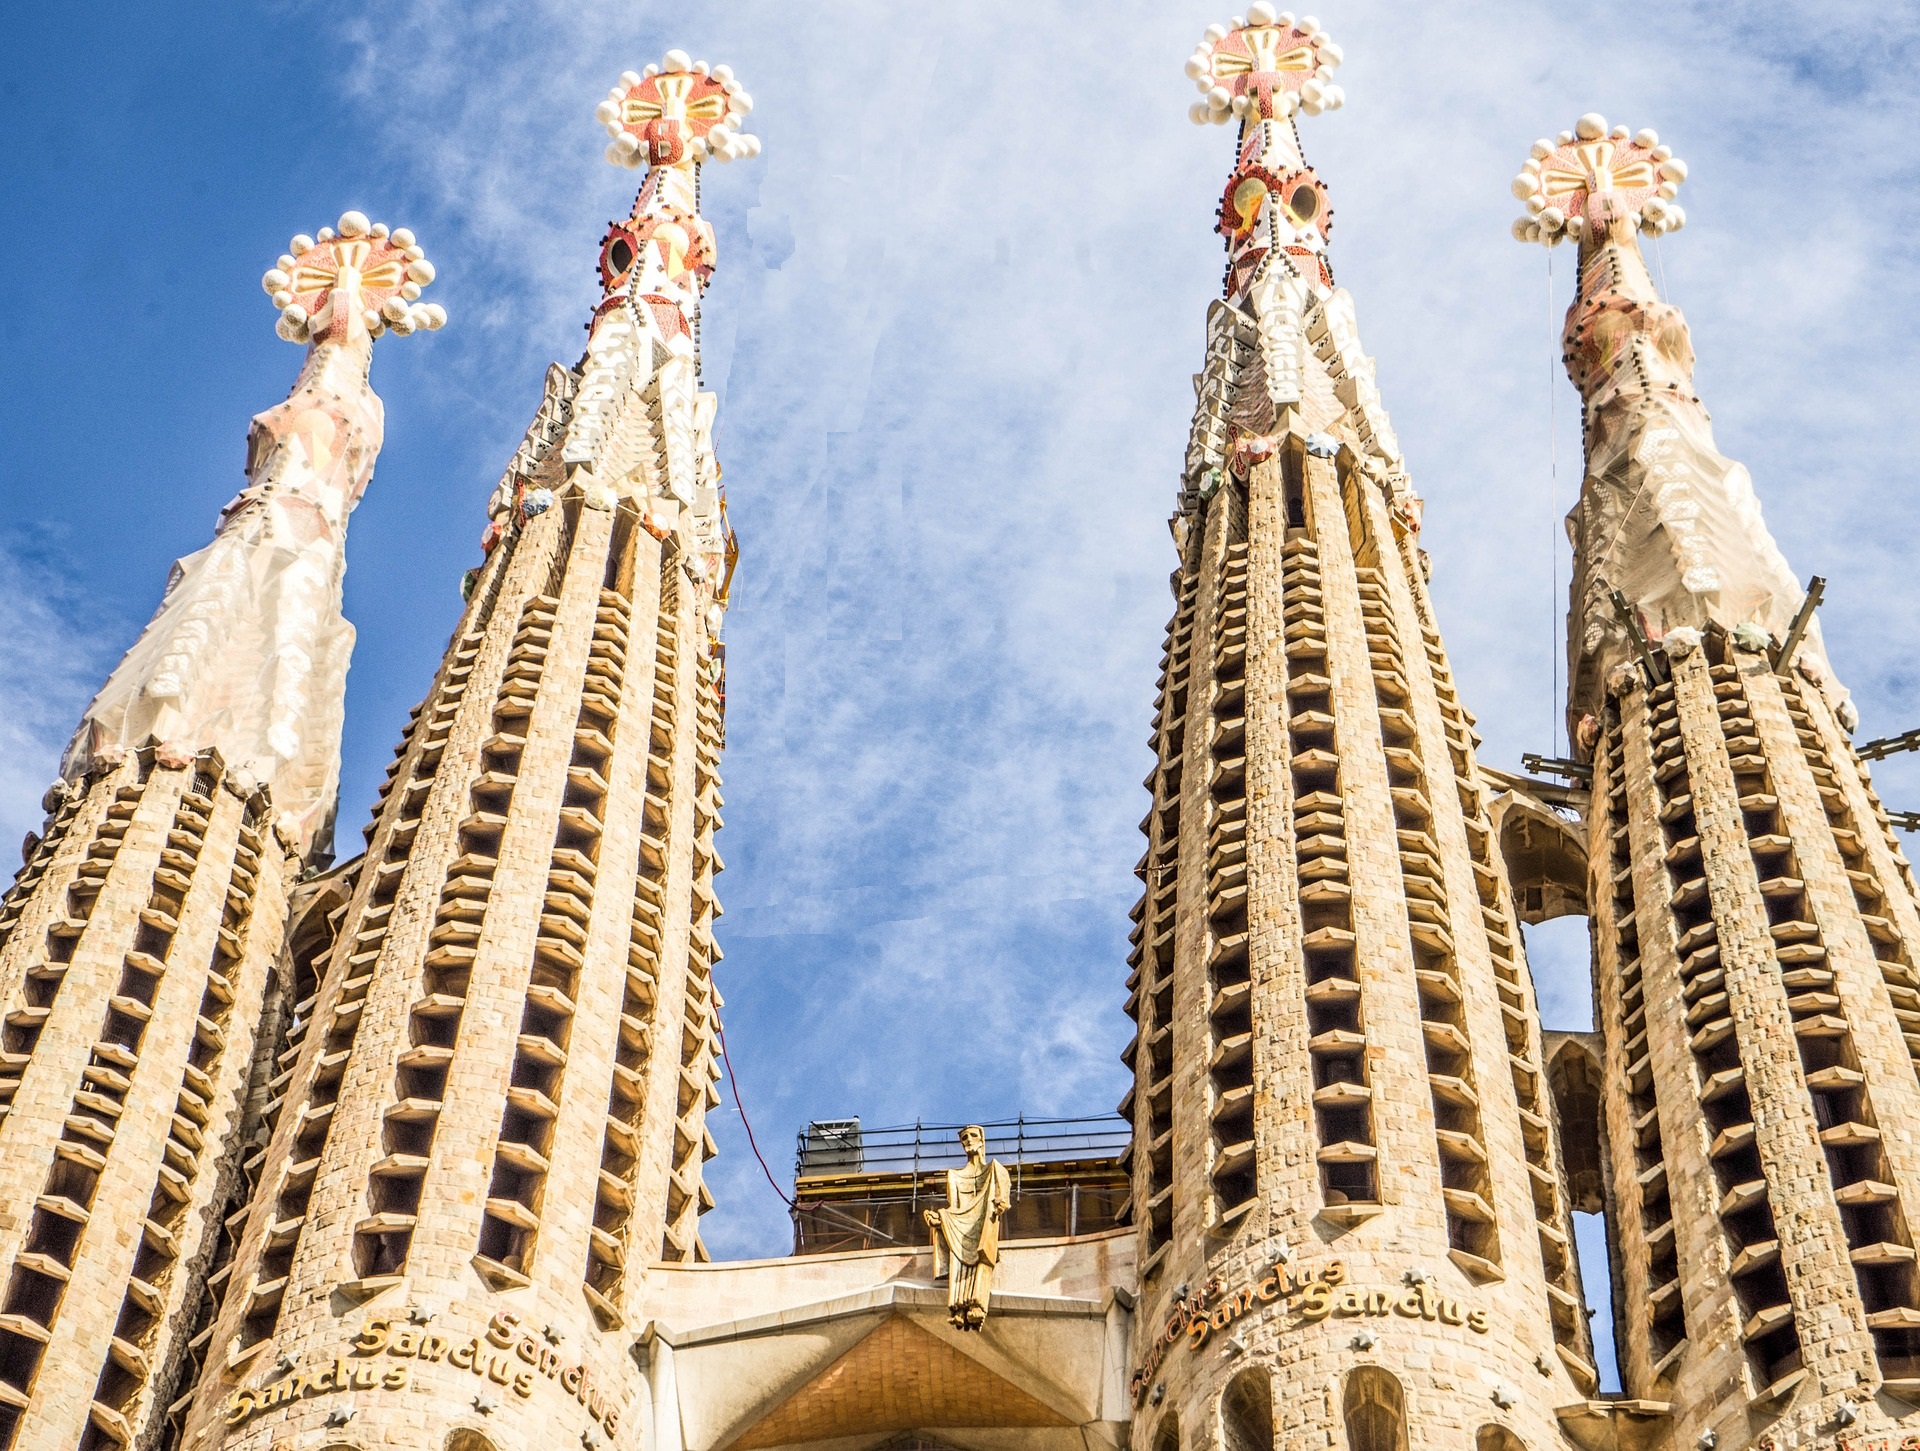 acheter réservations réserver visites guidées tours billets visiter Barcelone